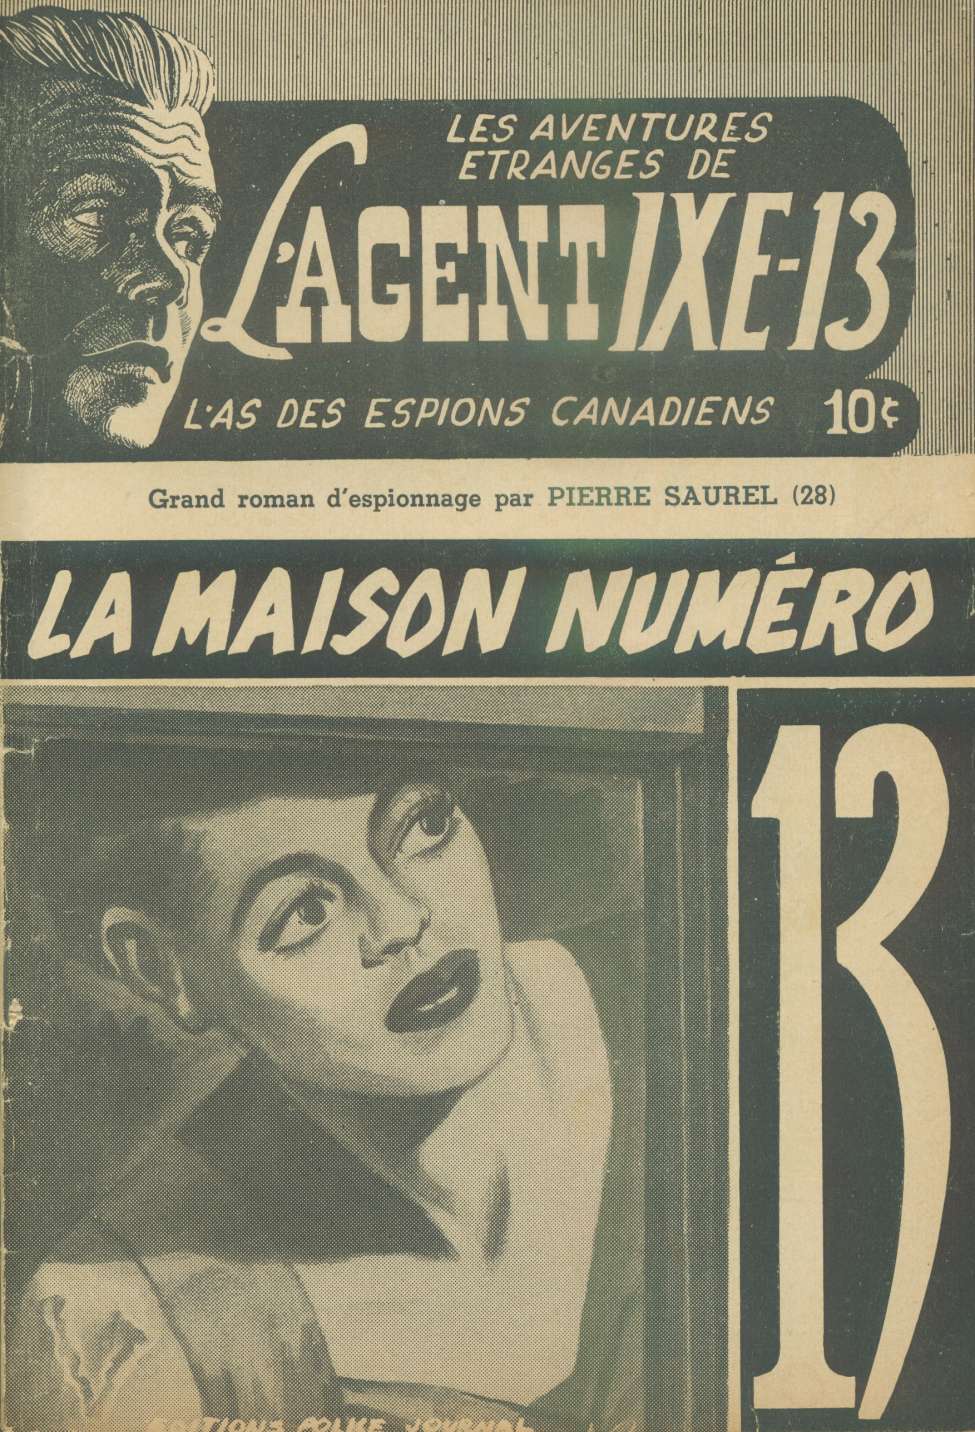 Book Cover For L'Agent IXE-13 v2 28 - La maison numéro 13